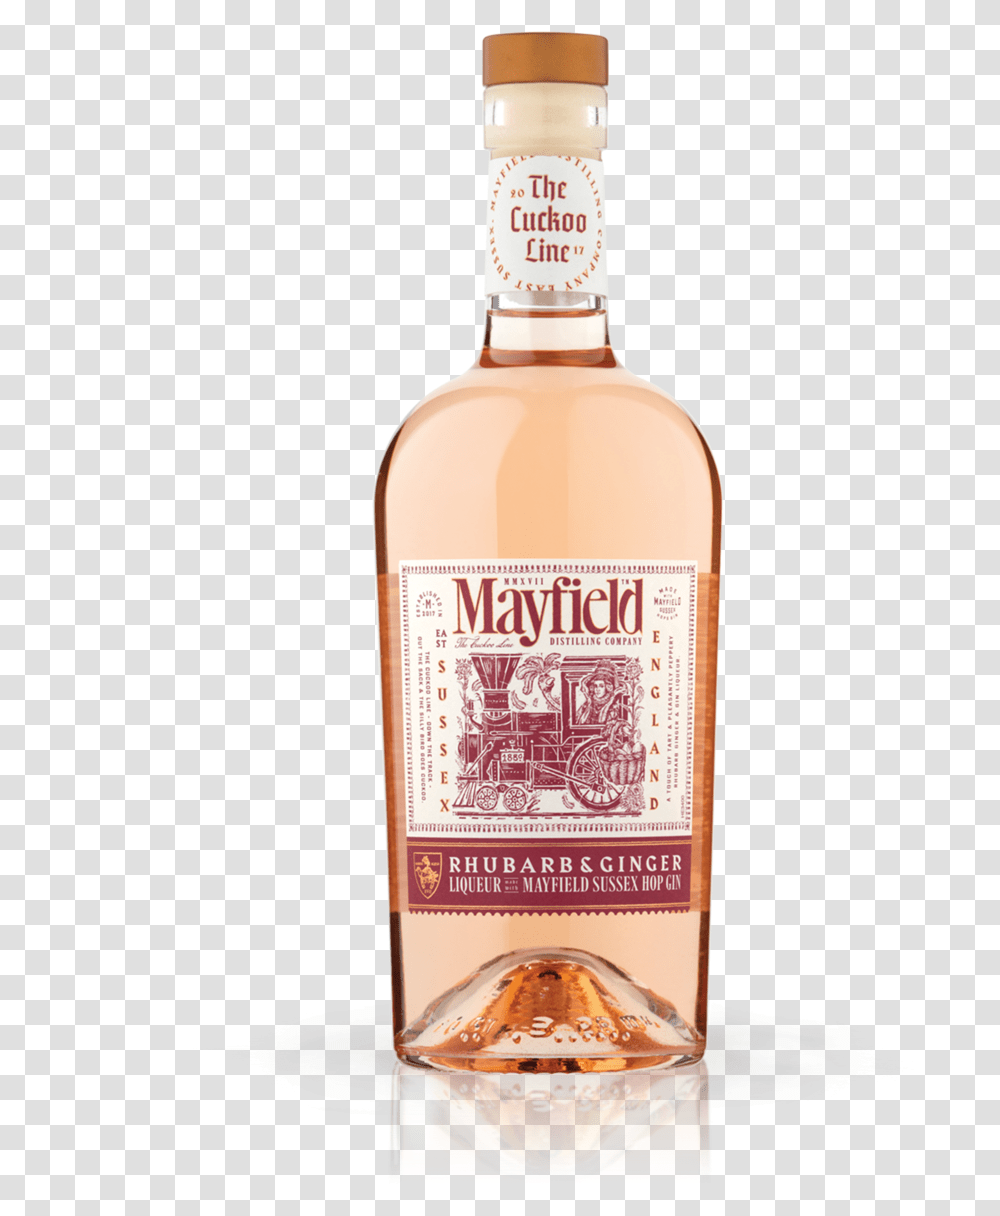 Mayfield Rhubarb Ginger Gin Liqueur Packshot Mayfield Sussex Hop Gin, Liquor, Alcohol, Beverage, Drink Transparent Png